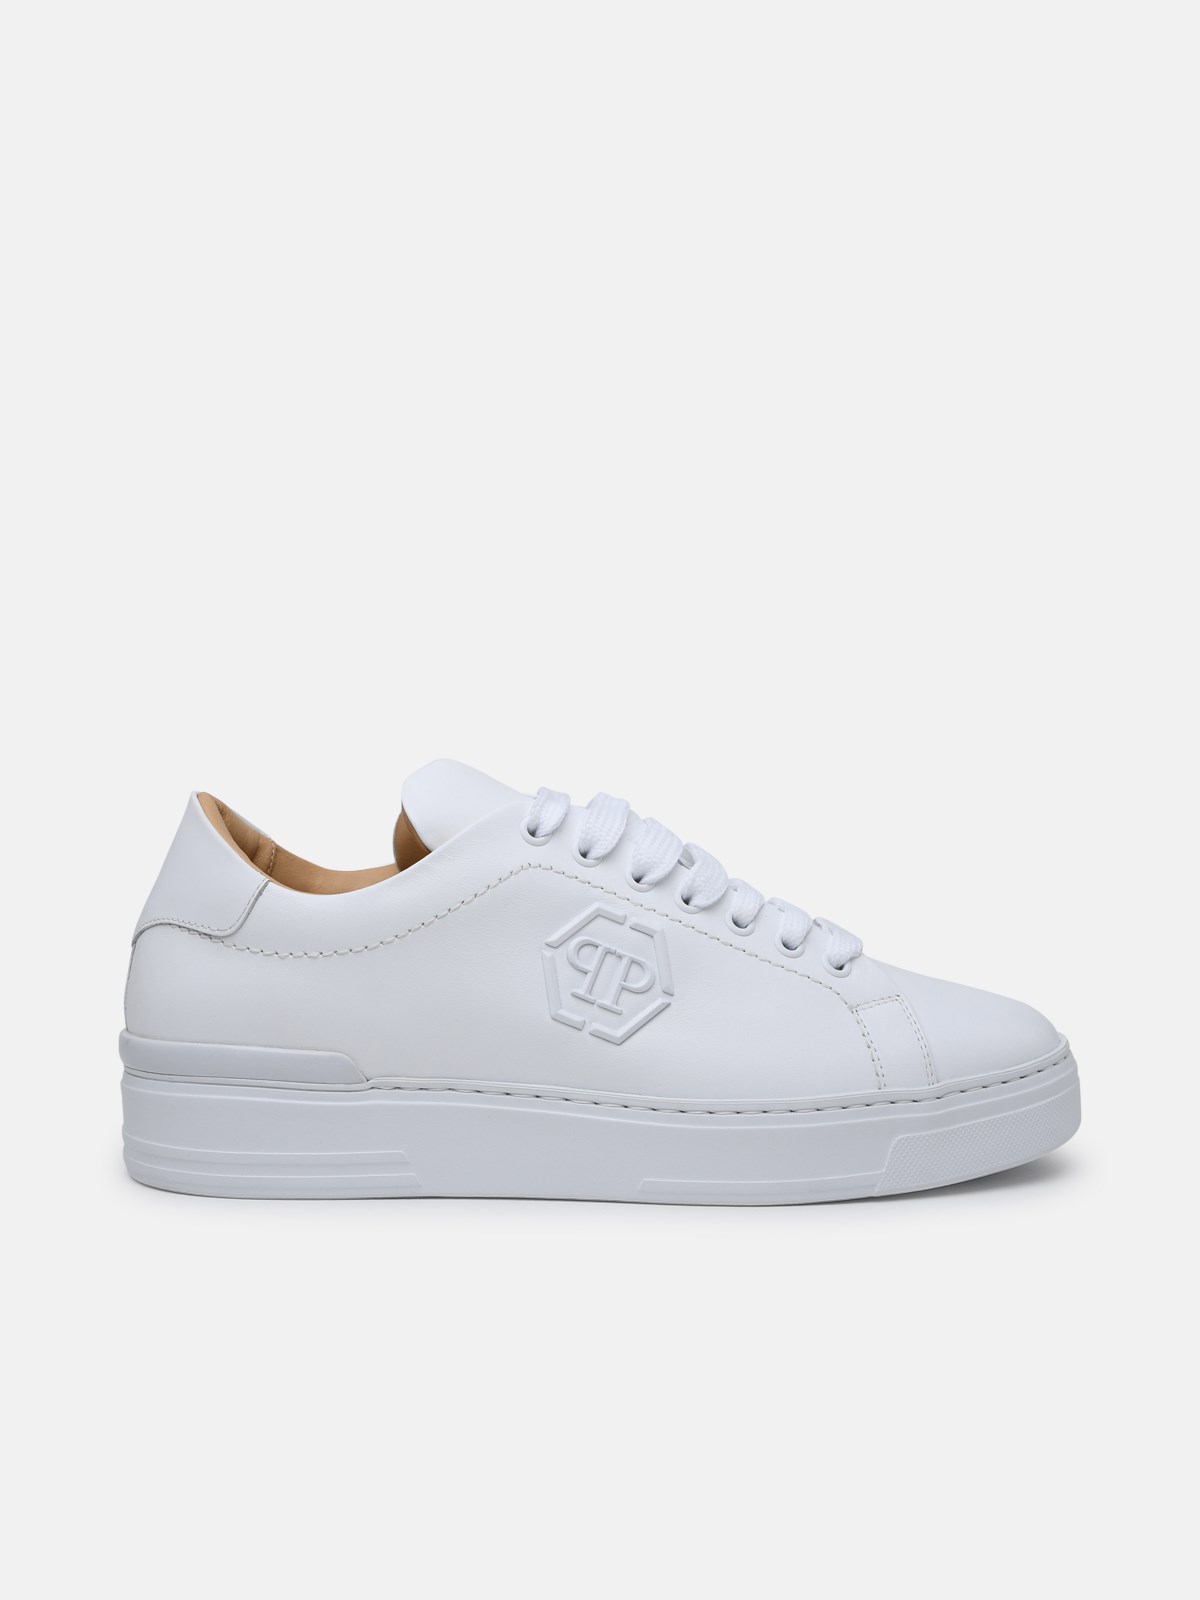 Philipp Plein White Leather Hexagon Sneakers